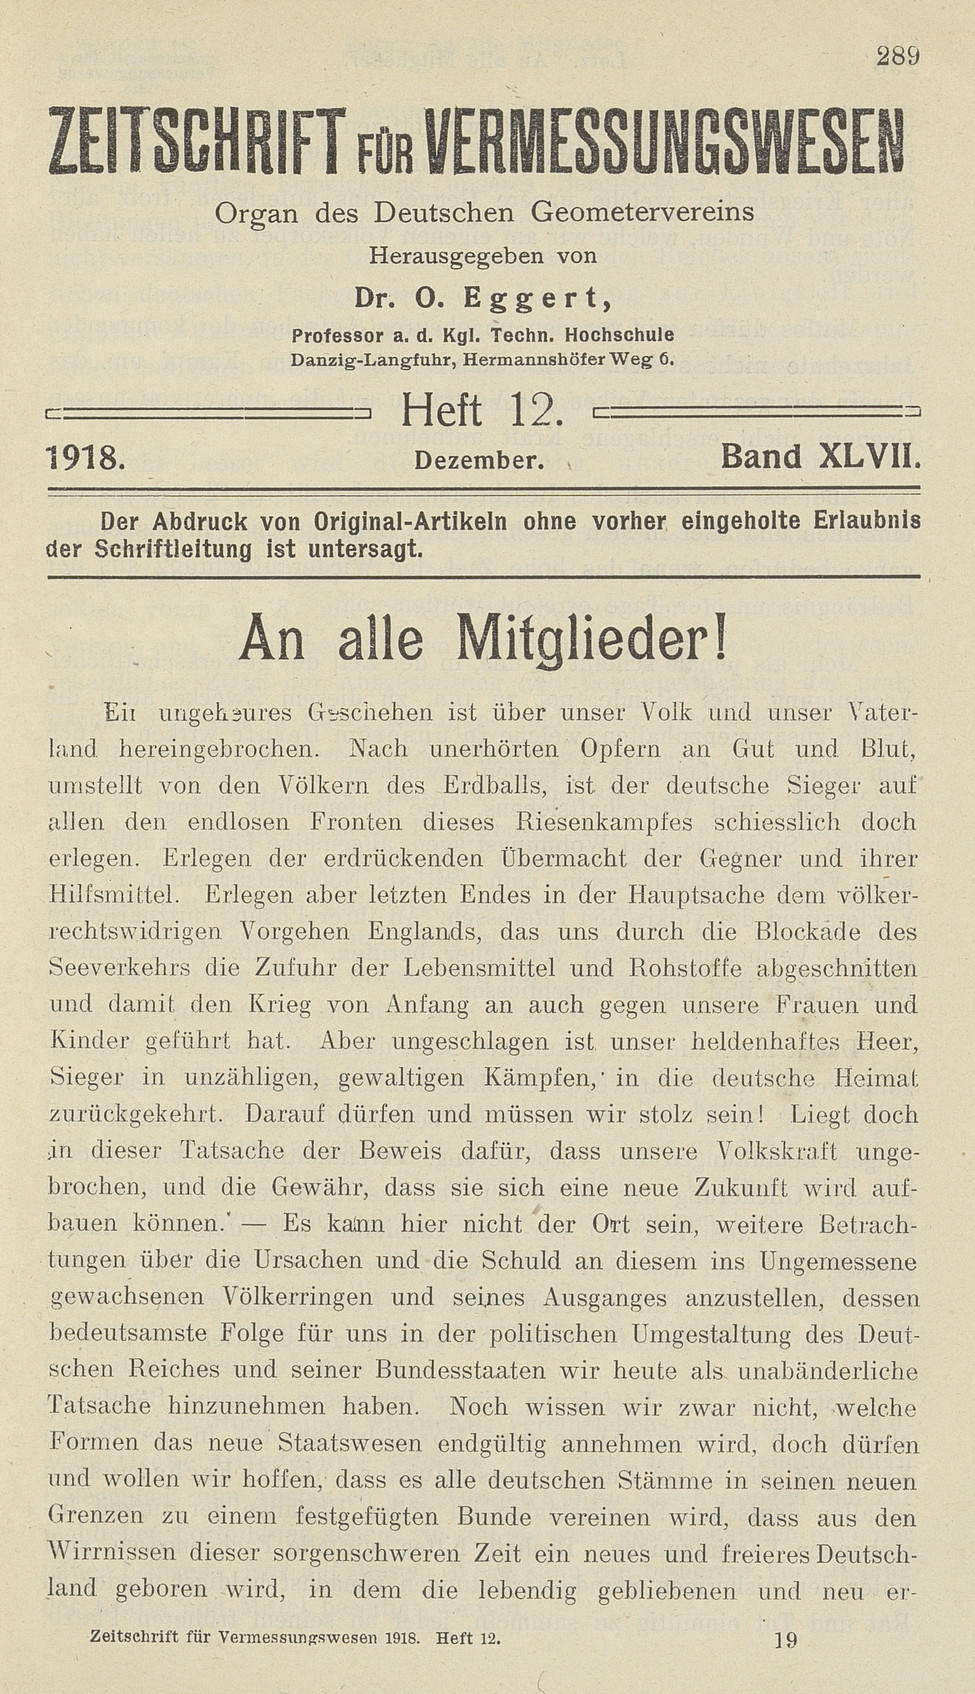 Zeitschrift für Vermessungswesen, Heft 12, Band XLVII